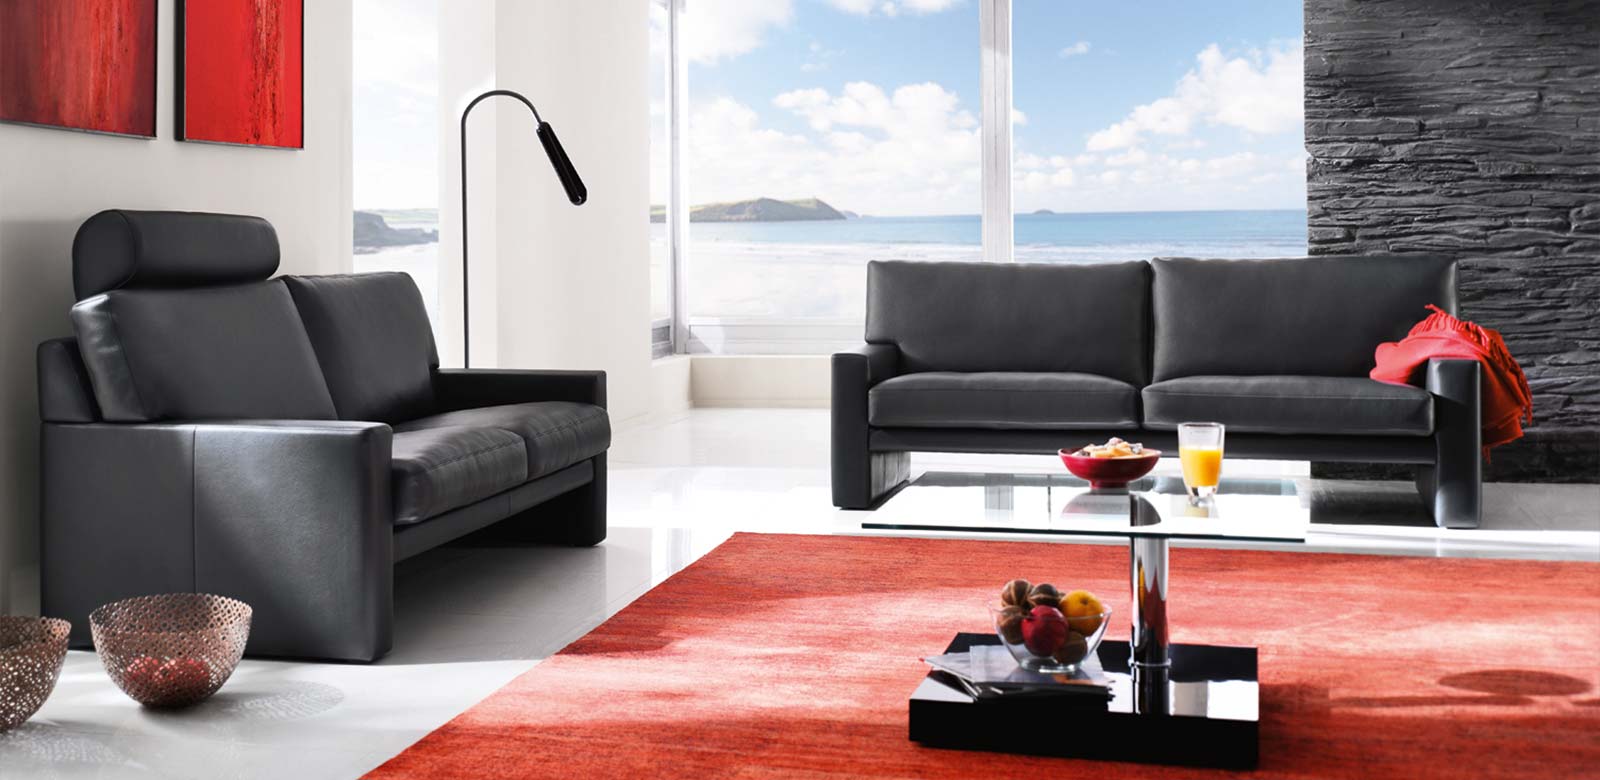 Zwei Sofas CL200 in schwarzem Leder mit Kopfstütze in moderner Strandvilla mit roten und schwarzen Akzenten an Teppichen und Wänden.